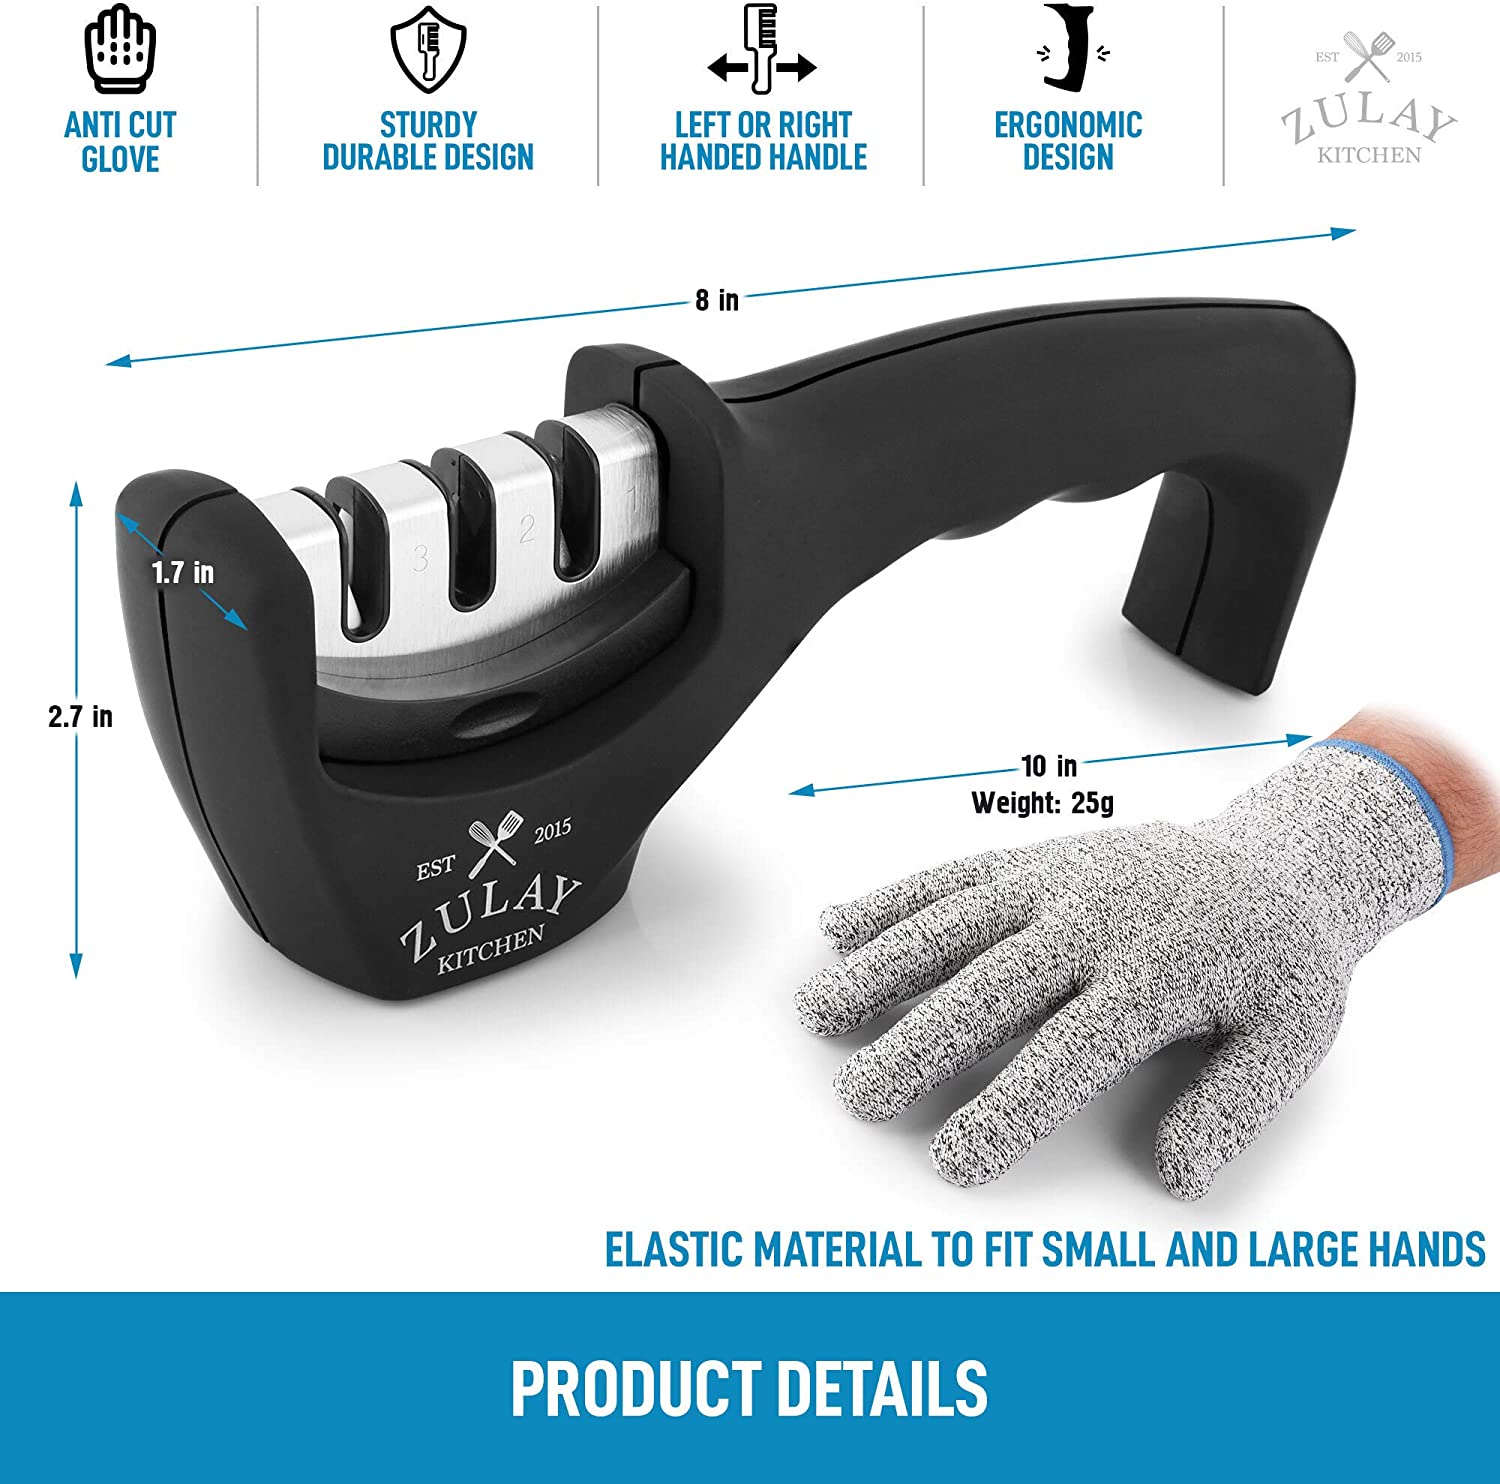 Zulay Kitchen - 3 Stage Knife Sharpener & Cut Resistant Glove